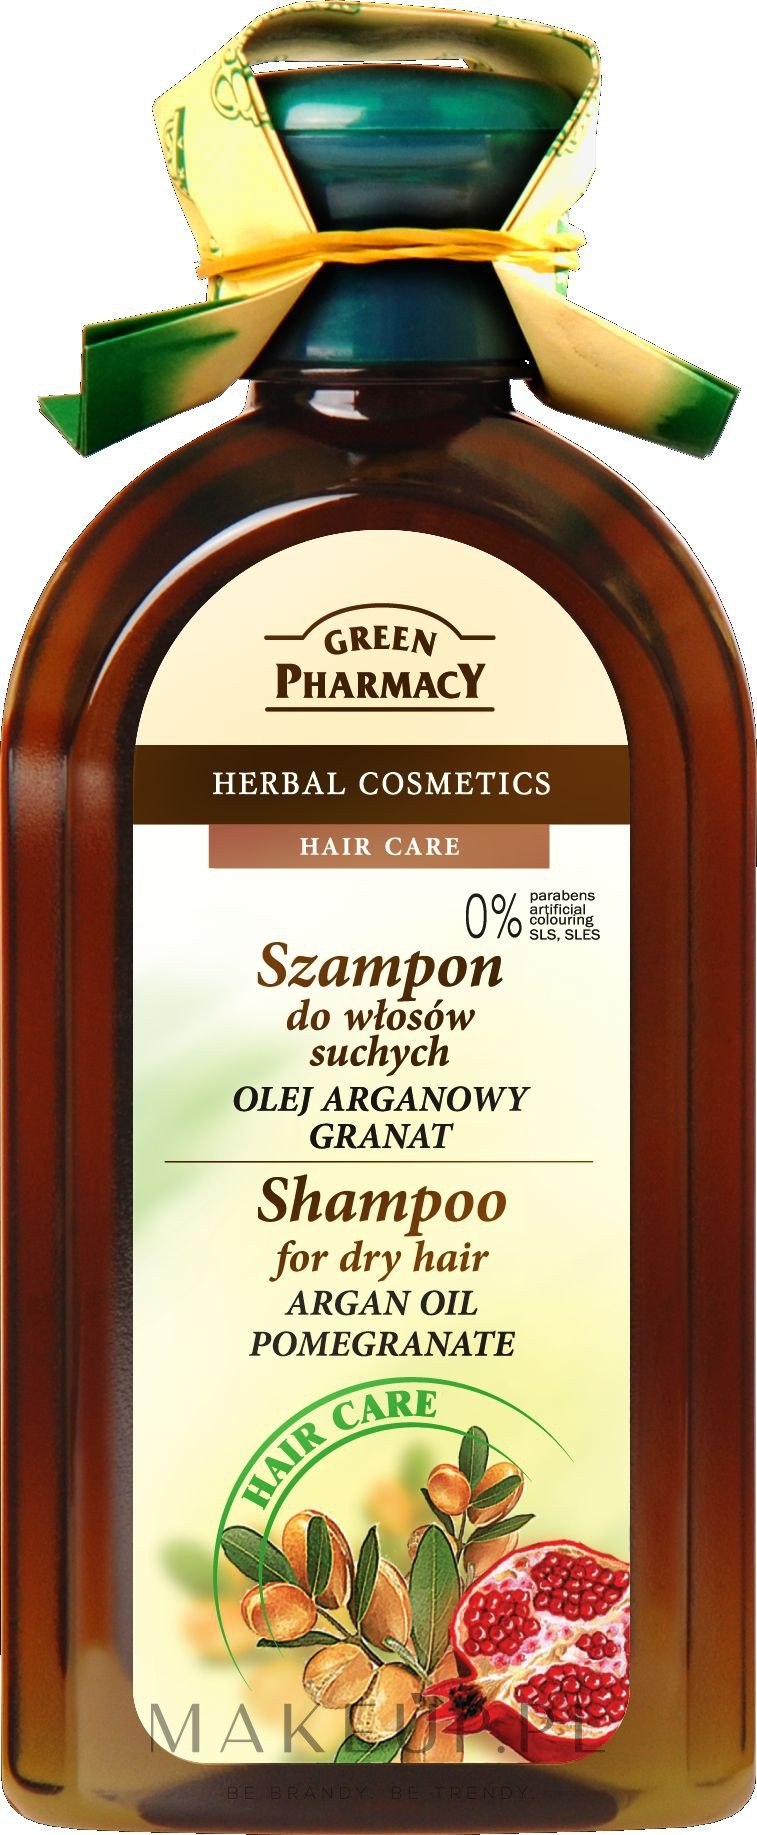 green pharmacy szampon wizaz